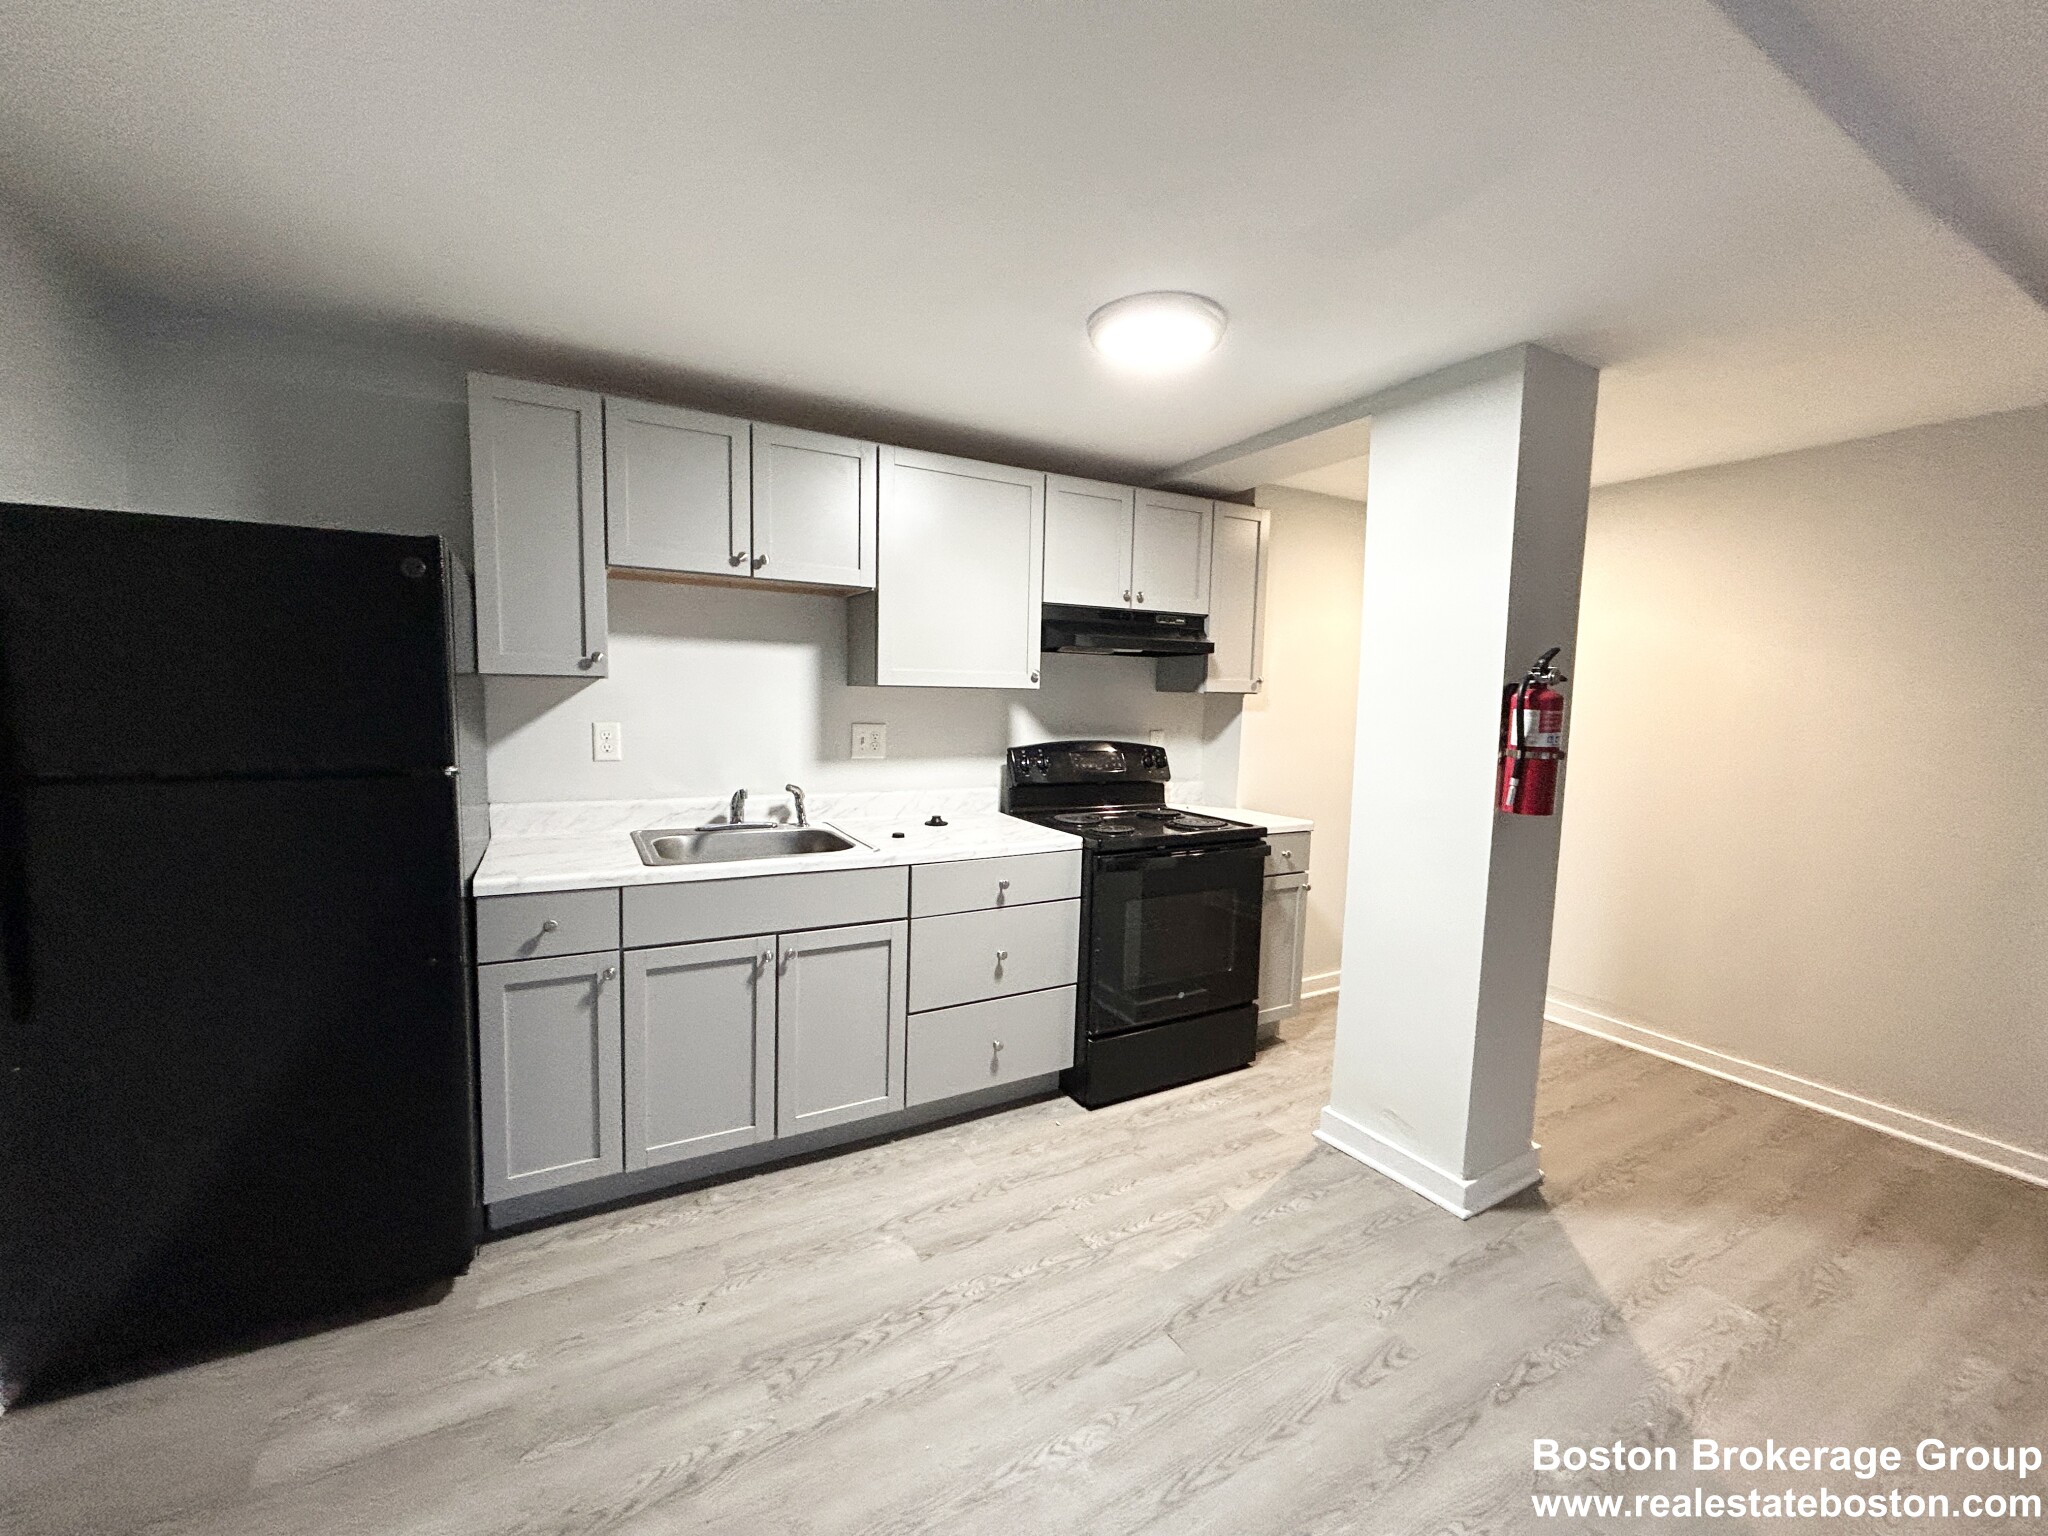 Photos of apartment on Moreland St.,Boston MA 02119